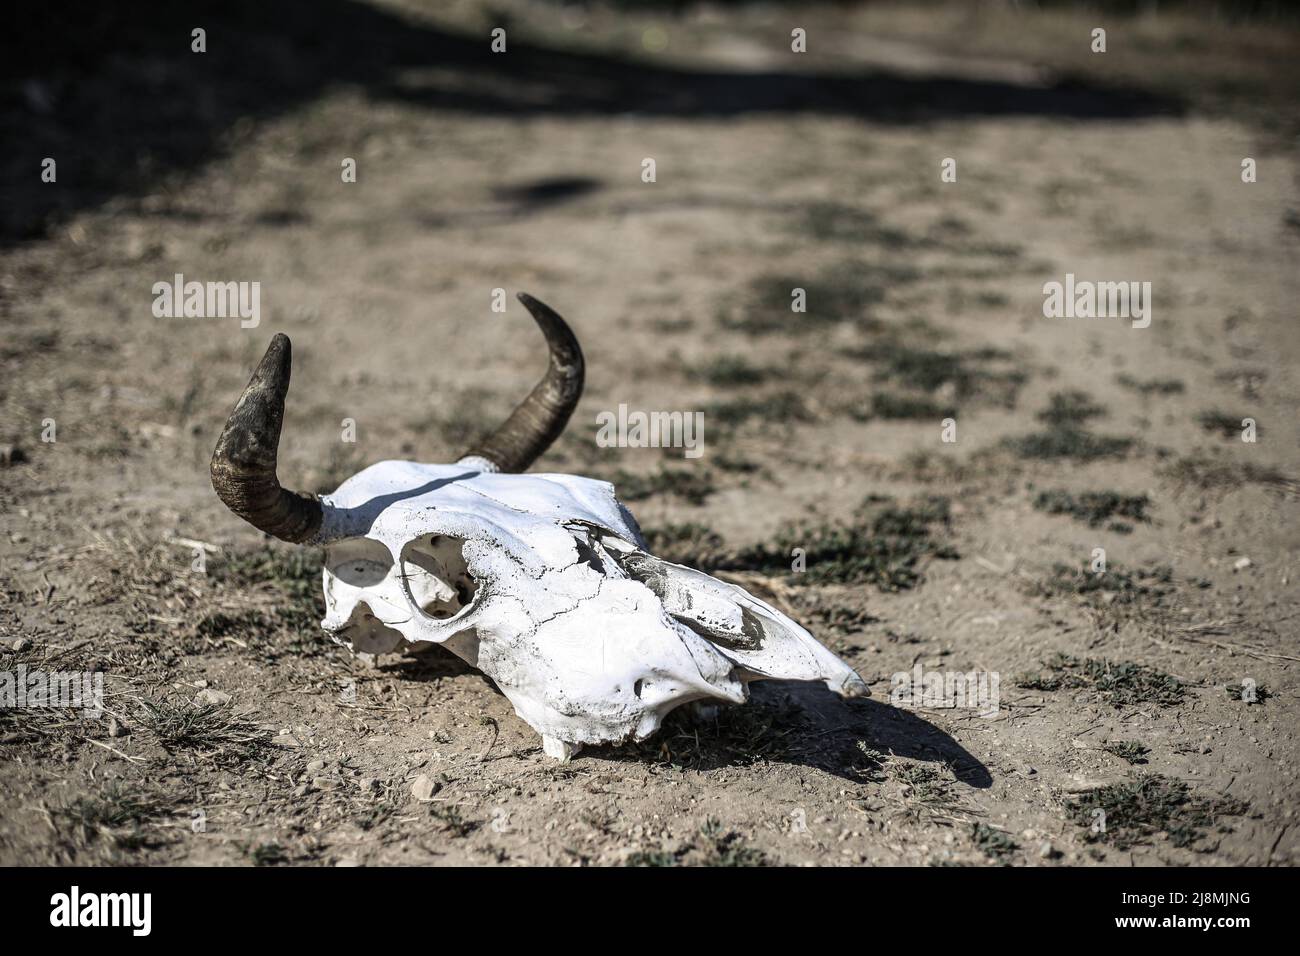 Squelette de la tête (crâne) d'une vache à cornes sur sol sec à partir de la chaleur par une journée chaude Banque D'Images